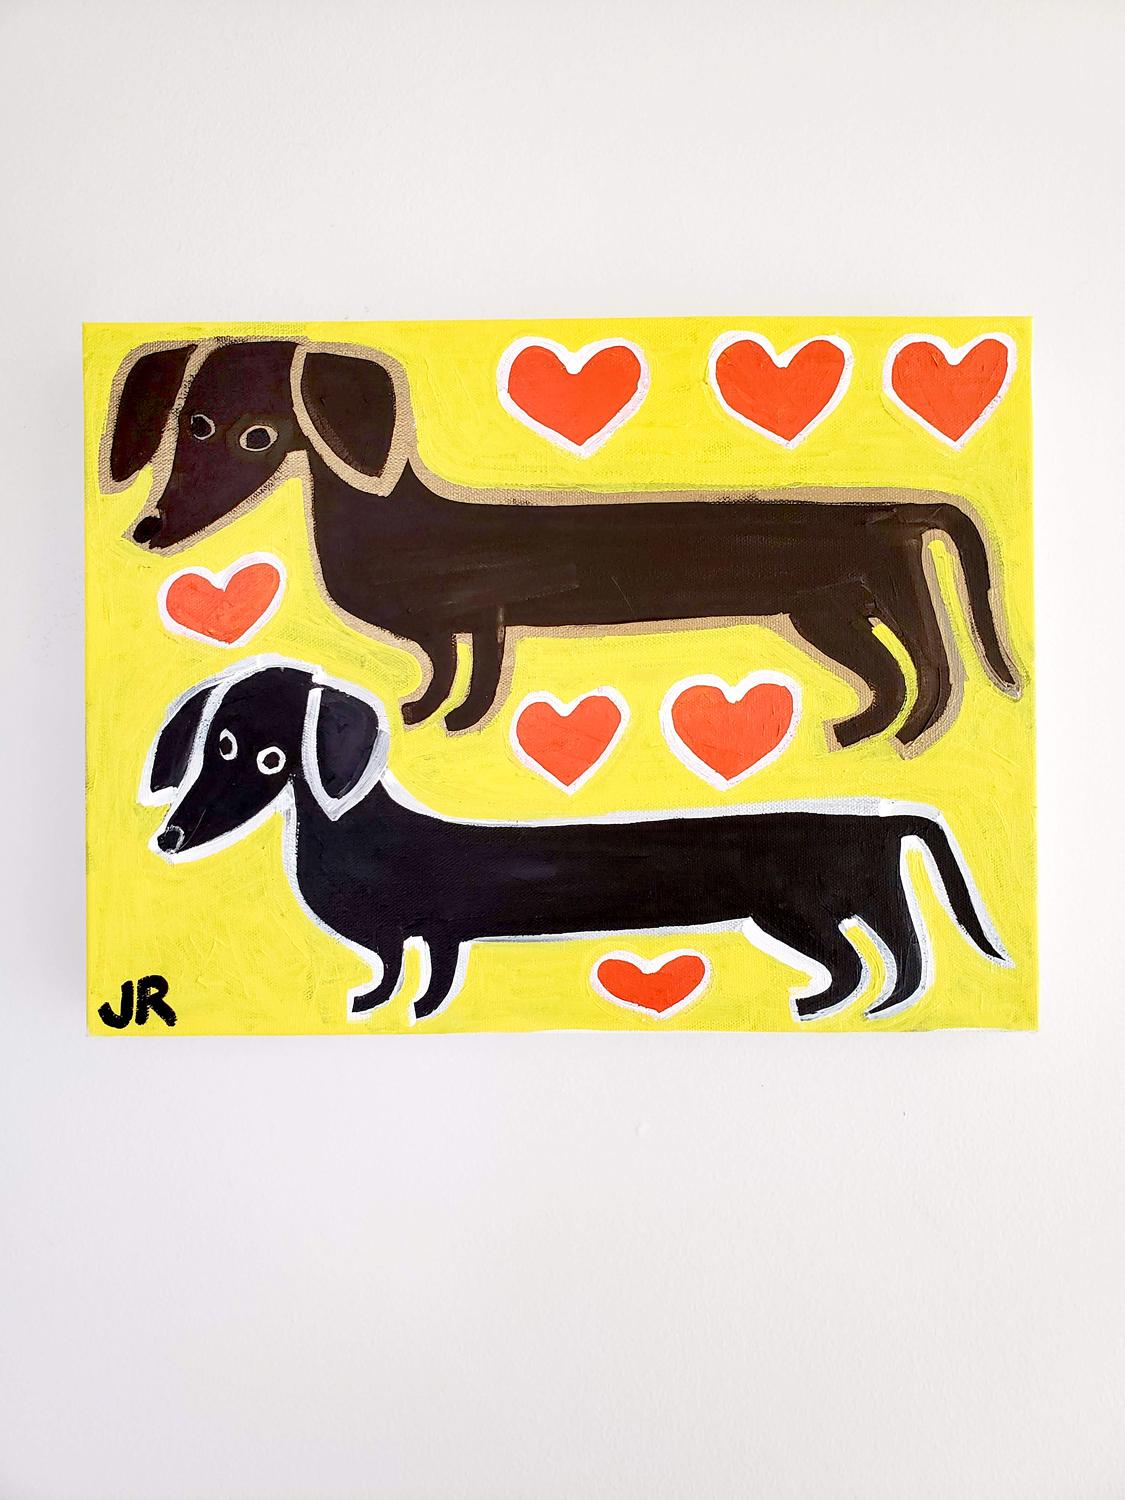 <p>Kommentare des Künstlers<br>Die Künstlerin Jessica JH Roller porträtiert ein charmantes, langbeiniges Hundepaar. Sie lässt sich von den lustigen Daschunds ihres Freundes inspirieren. Jessicas spielerischer Stil des Primitivismus stellt die Hunde